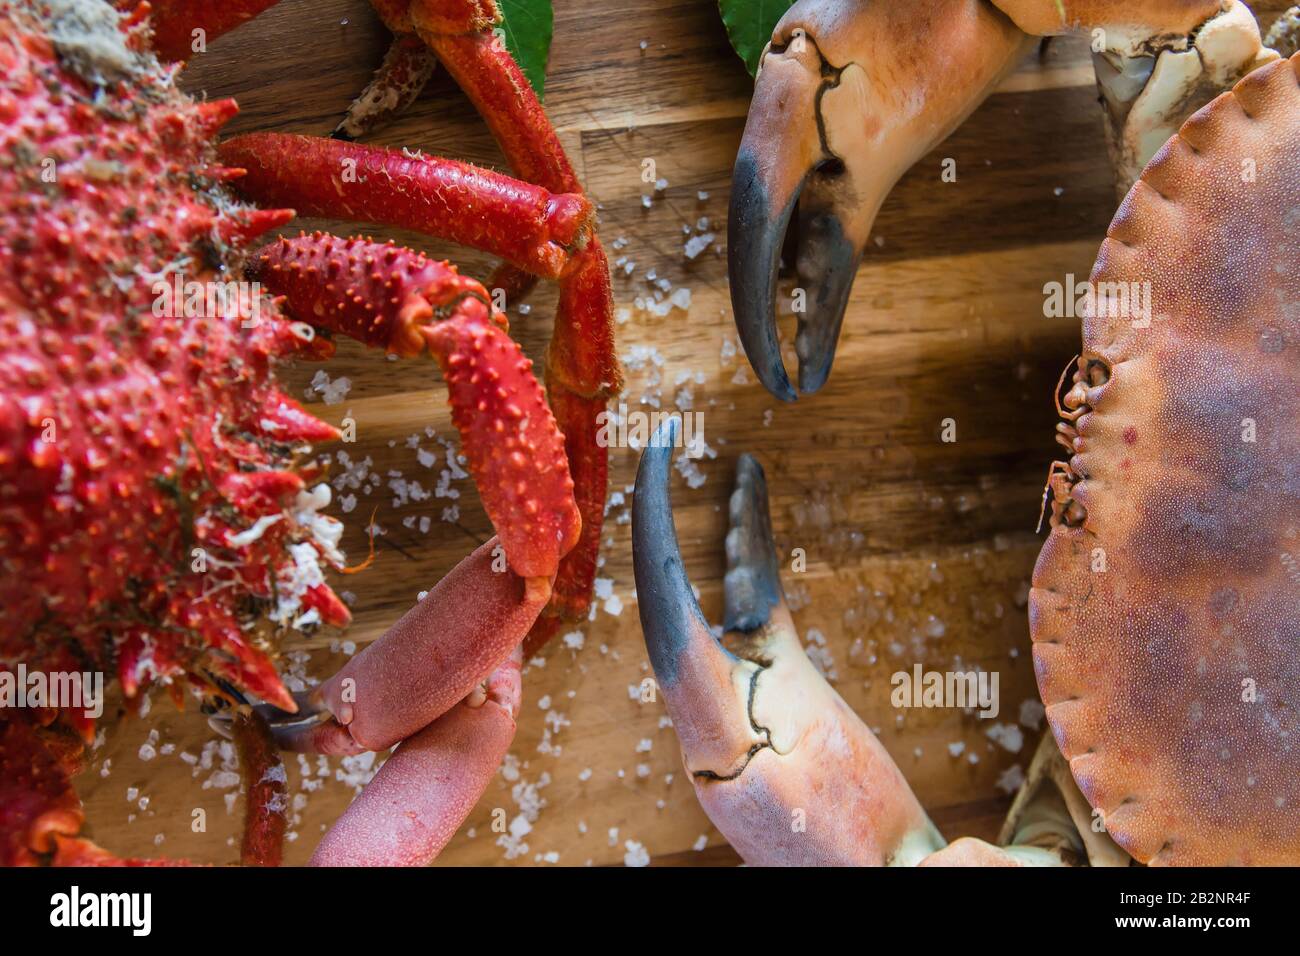 Crabe brun bouilli et crabe araignée dans le plan de cuisine en bois, délicieux préparation de fruits de mer Banque D'Images